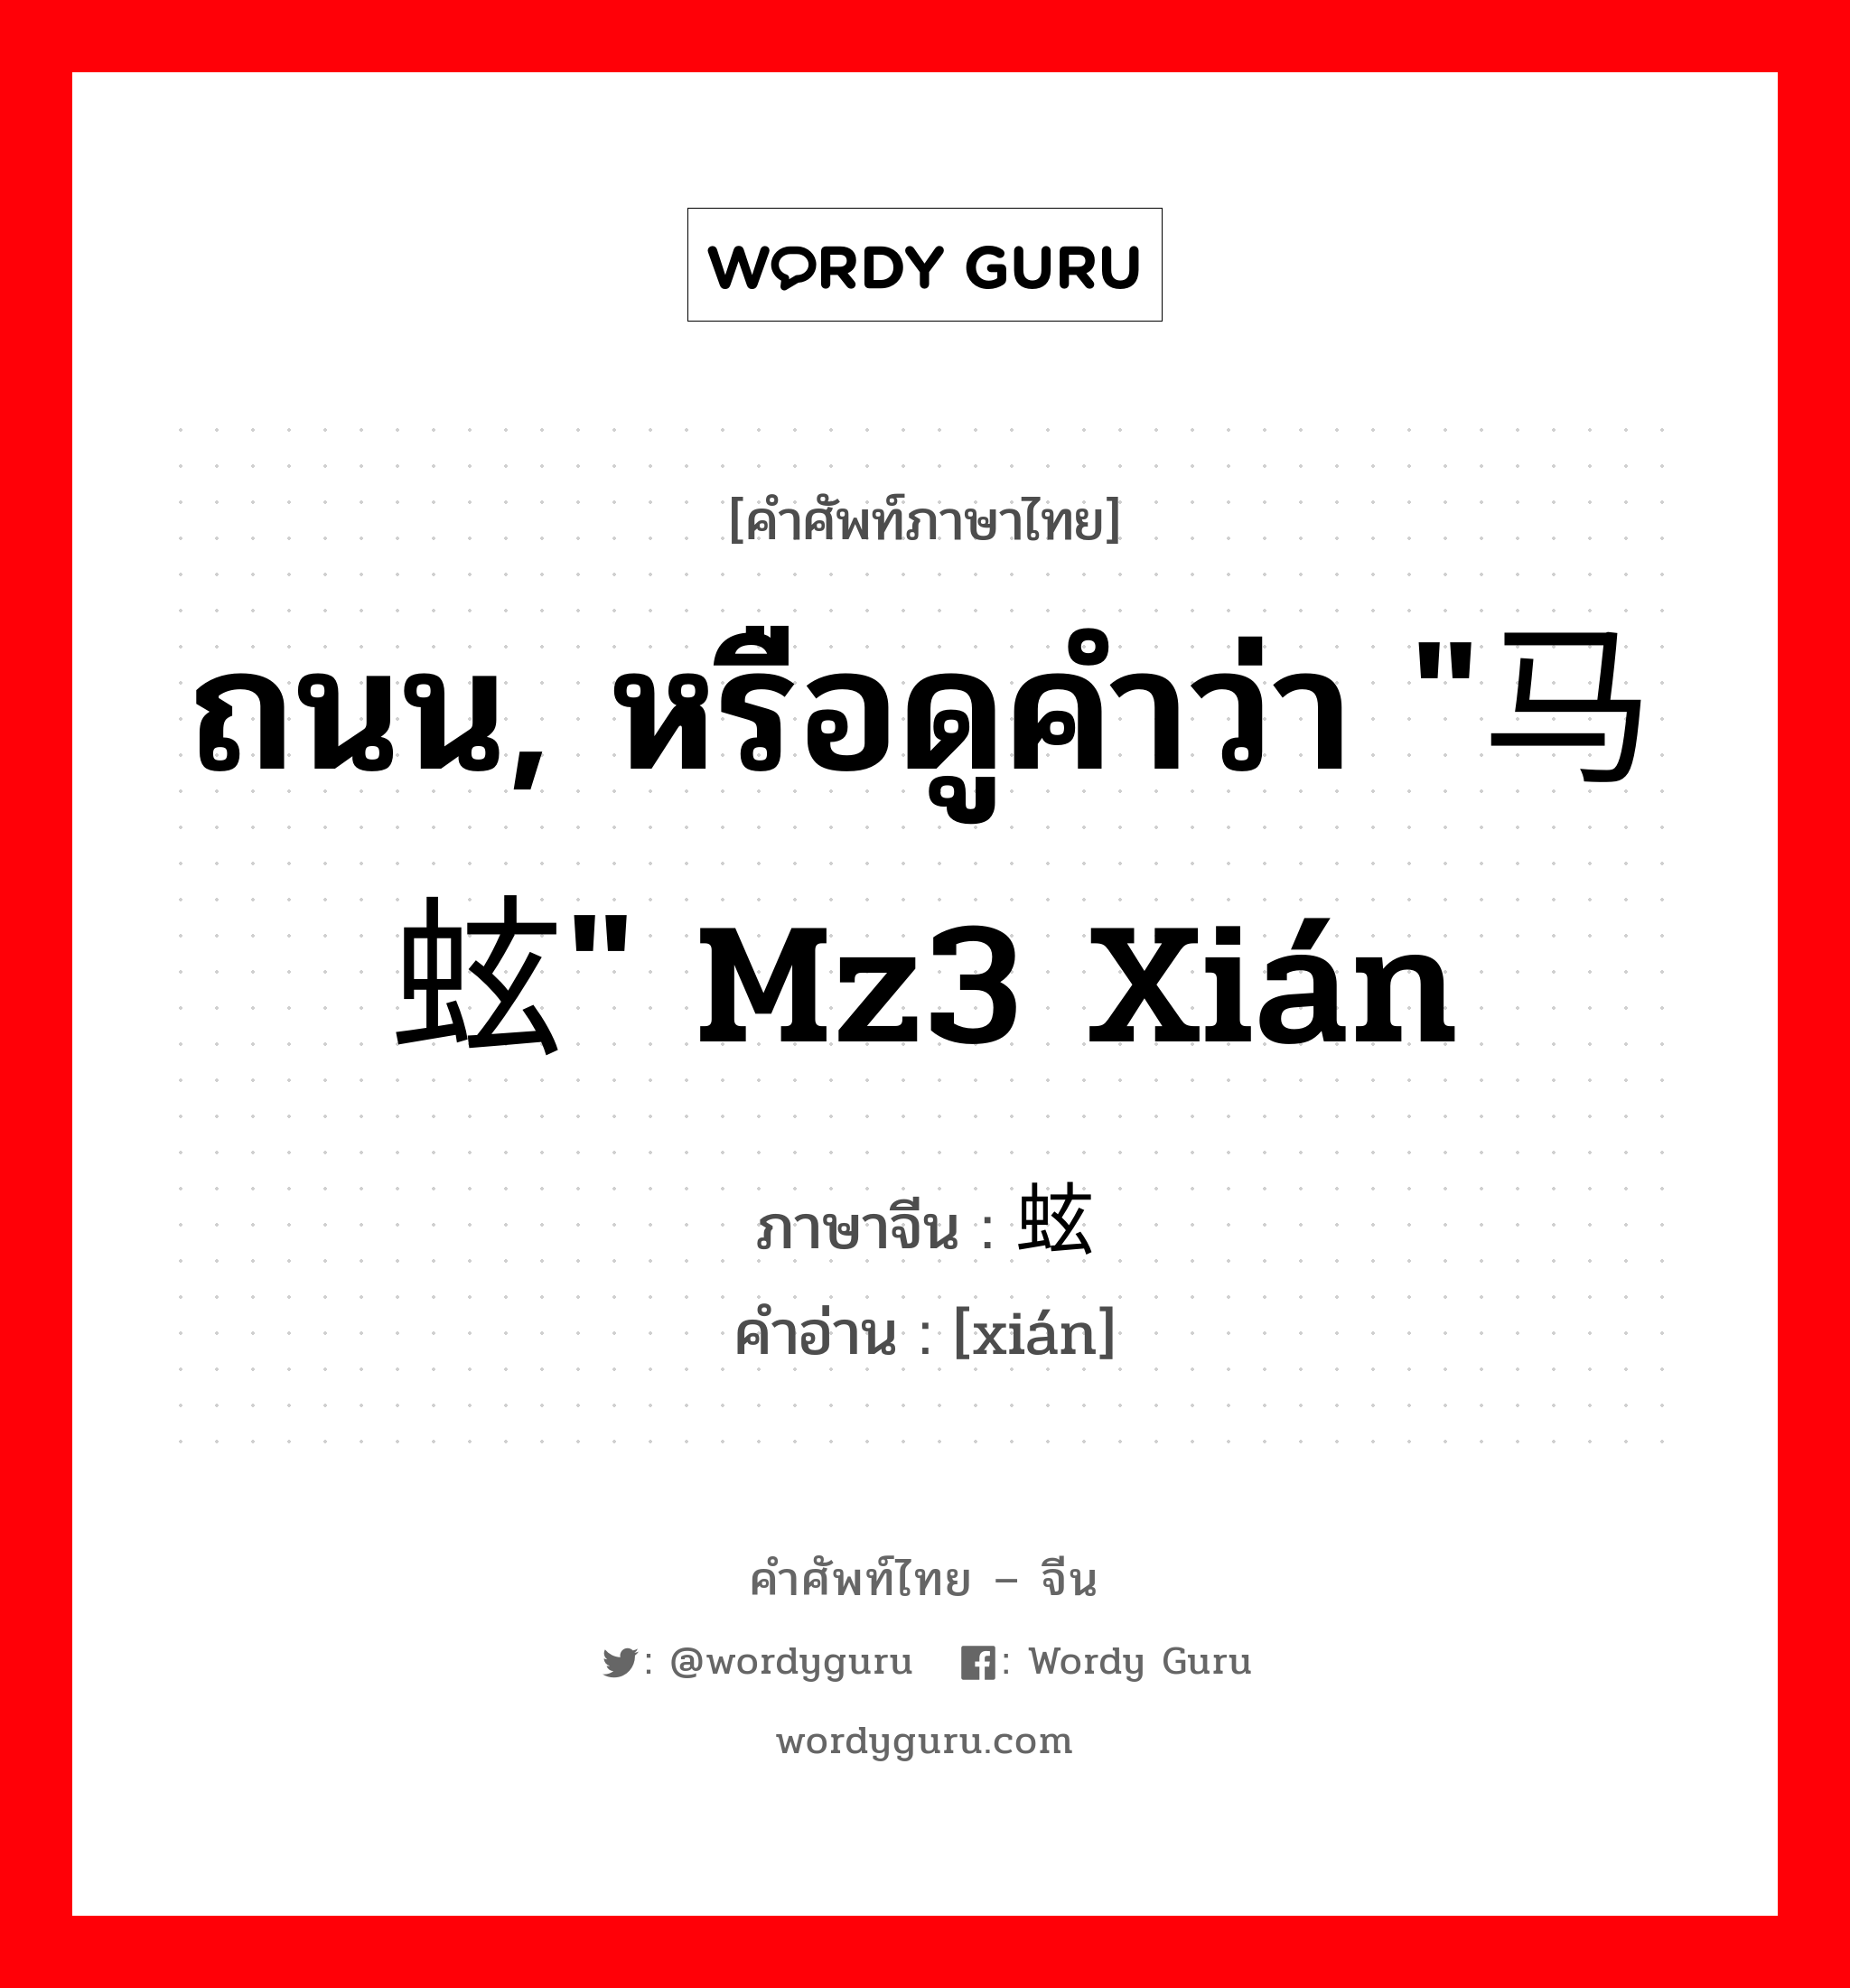 ถนน, หรือดูคำว่า "马蚿" mz3 xián ภาษาจีนคืออะไร, คำศัพท์ภาษาไทย - จีน ถนน, หรือดูคำว่า "马蚿" mz3 xián ภาษาจีน 蚿 คำอ่าน [xián]